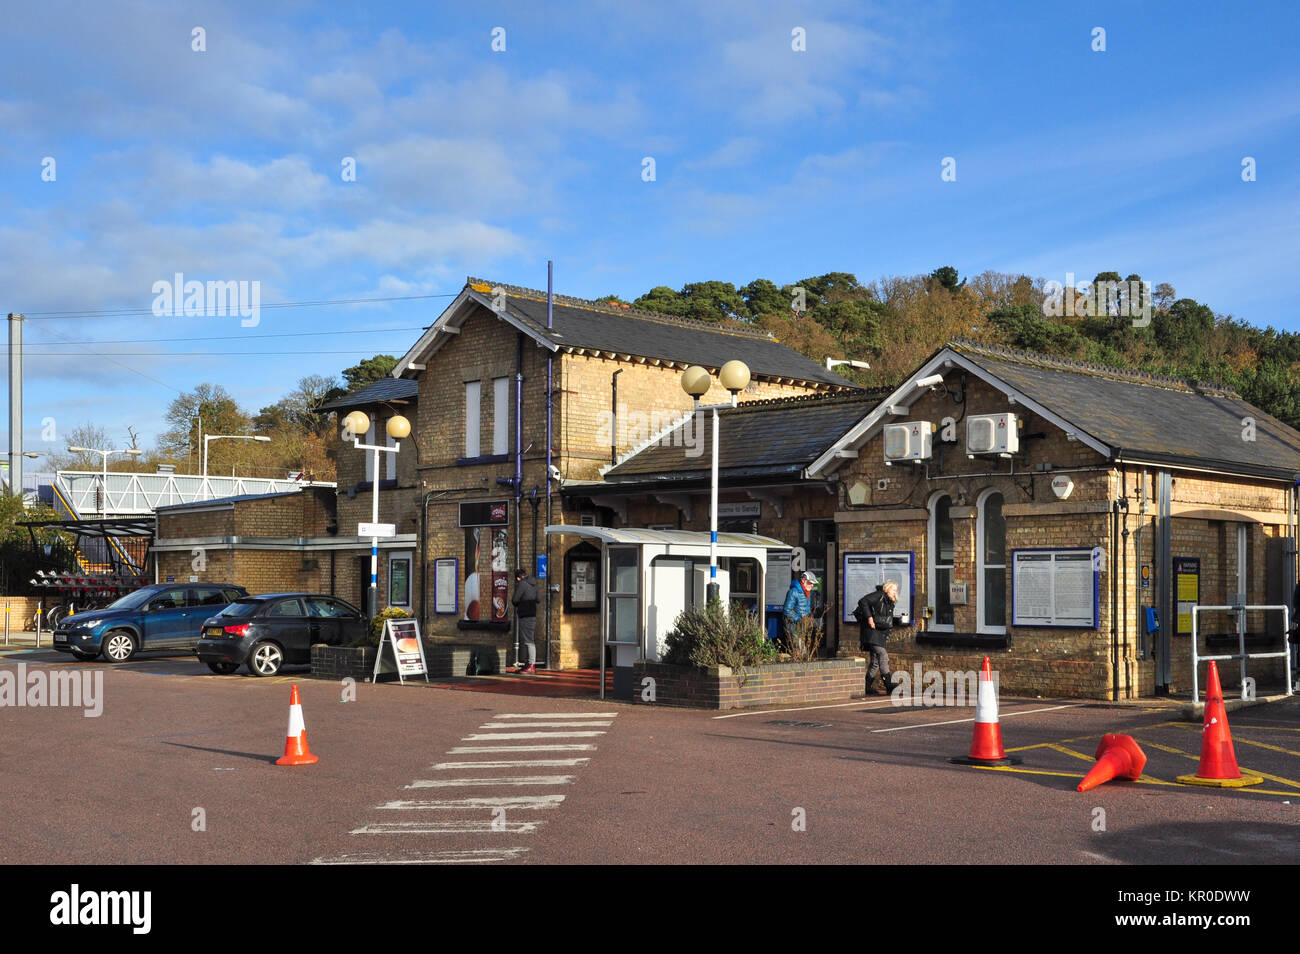 Stazione ferroviaria di edifici e parcheggio, Sandy, Bedfordshire, England, Regno Unito Foto Stock